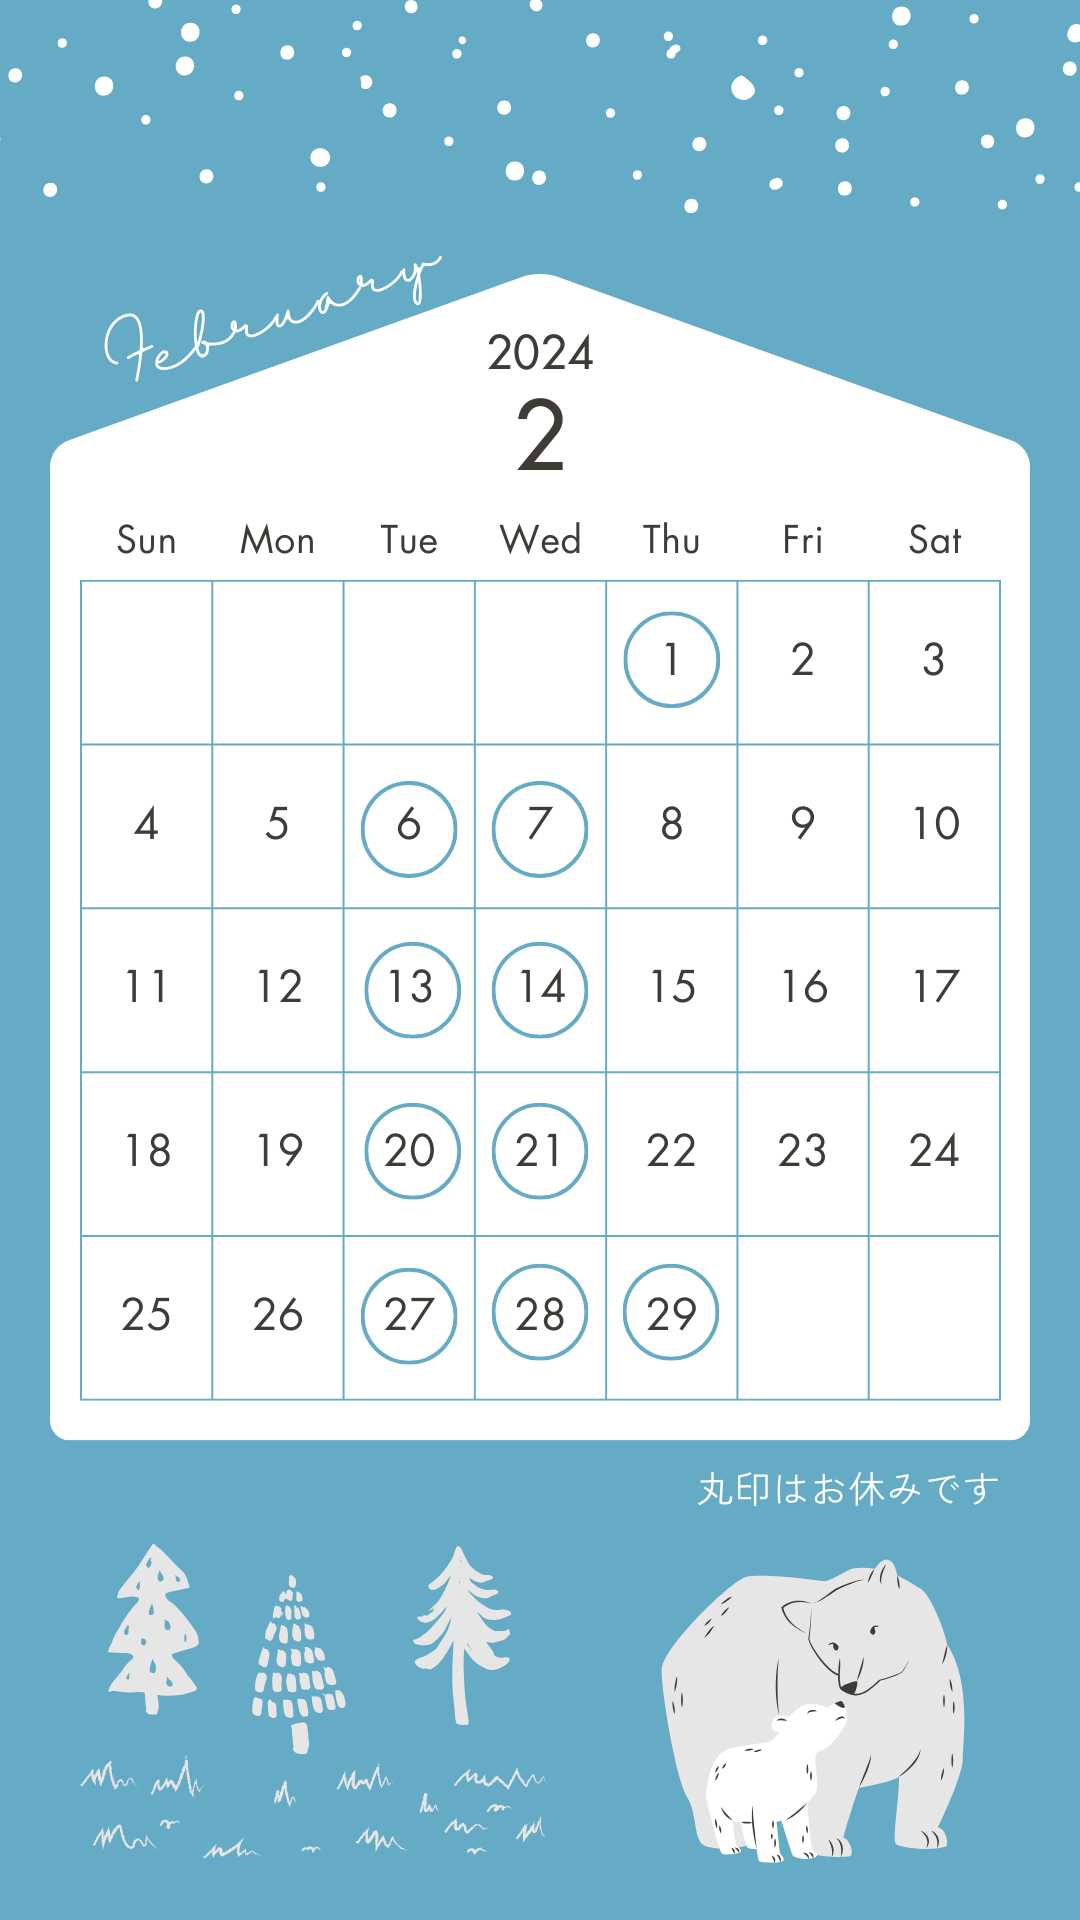 青　白　ナチュラル　7月のカレンダー　営業日のお知らせ　Instagramの投稿